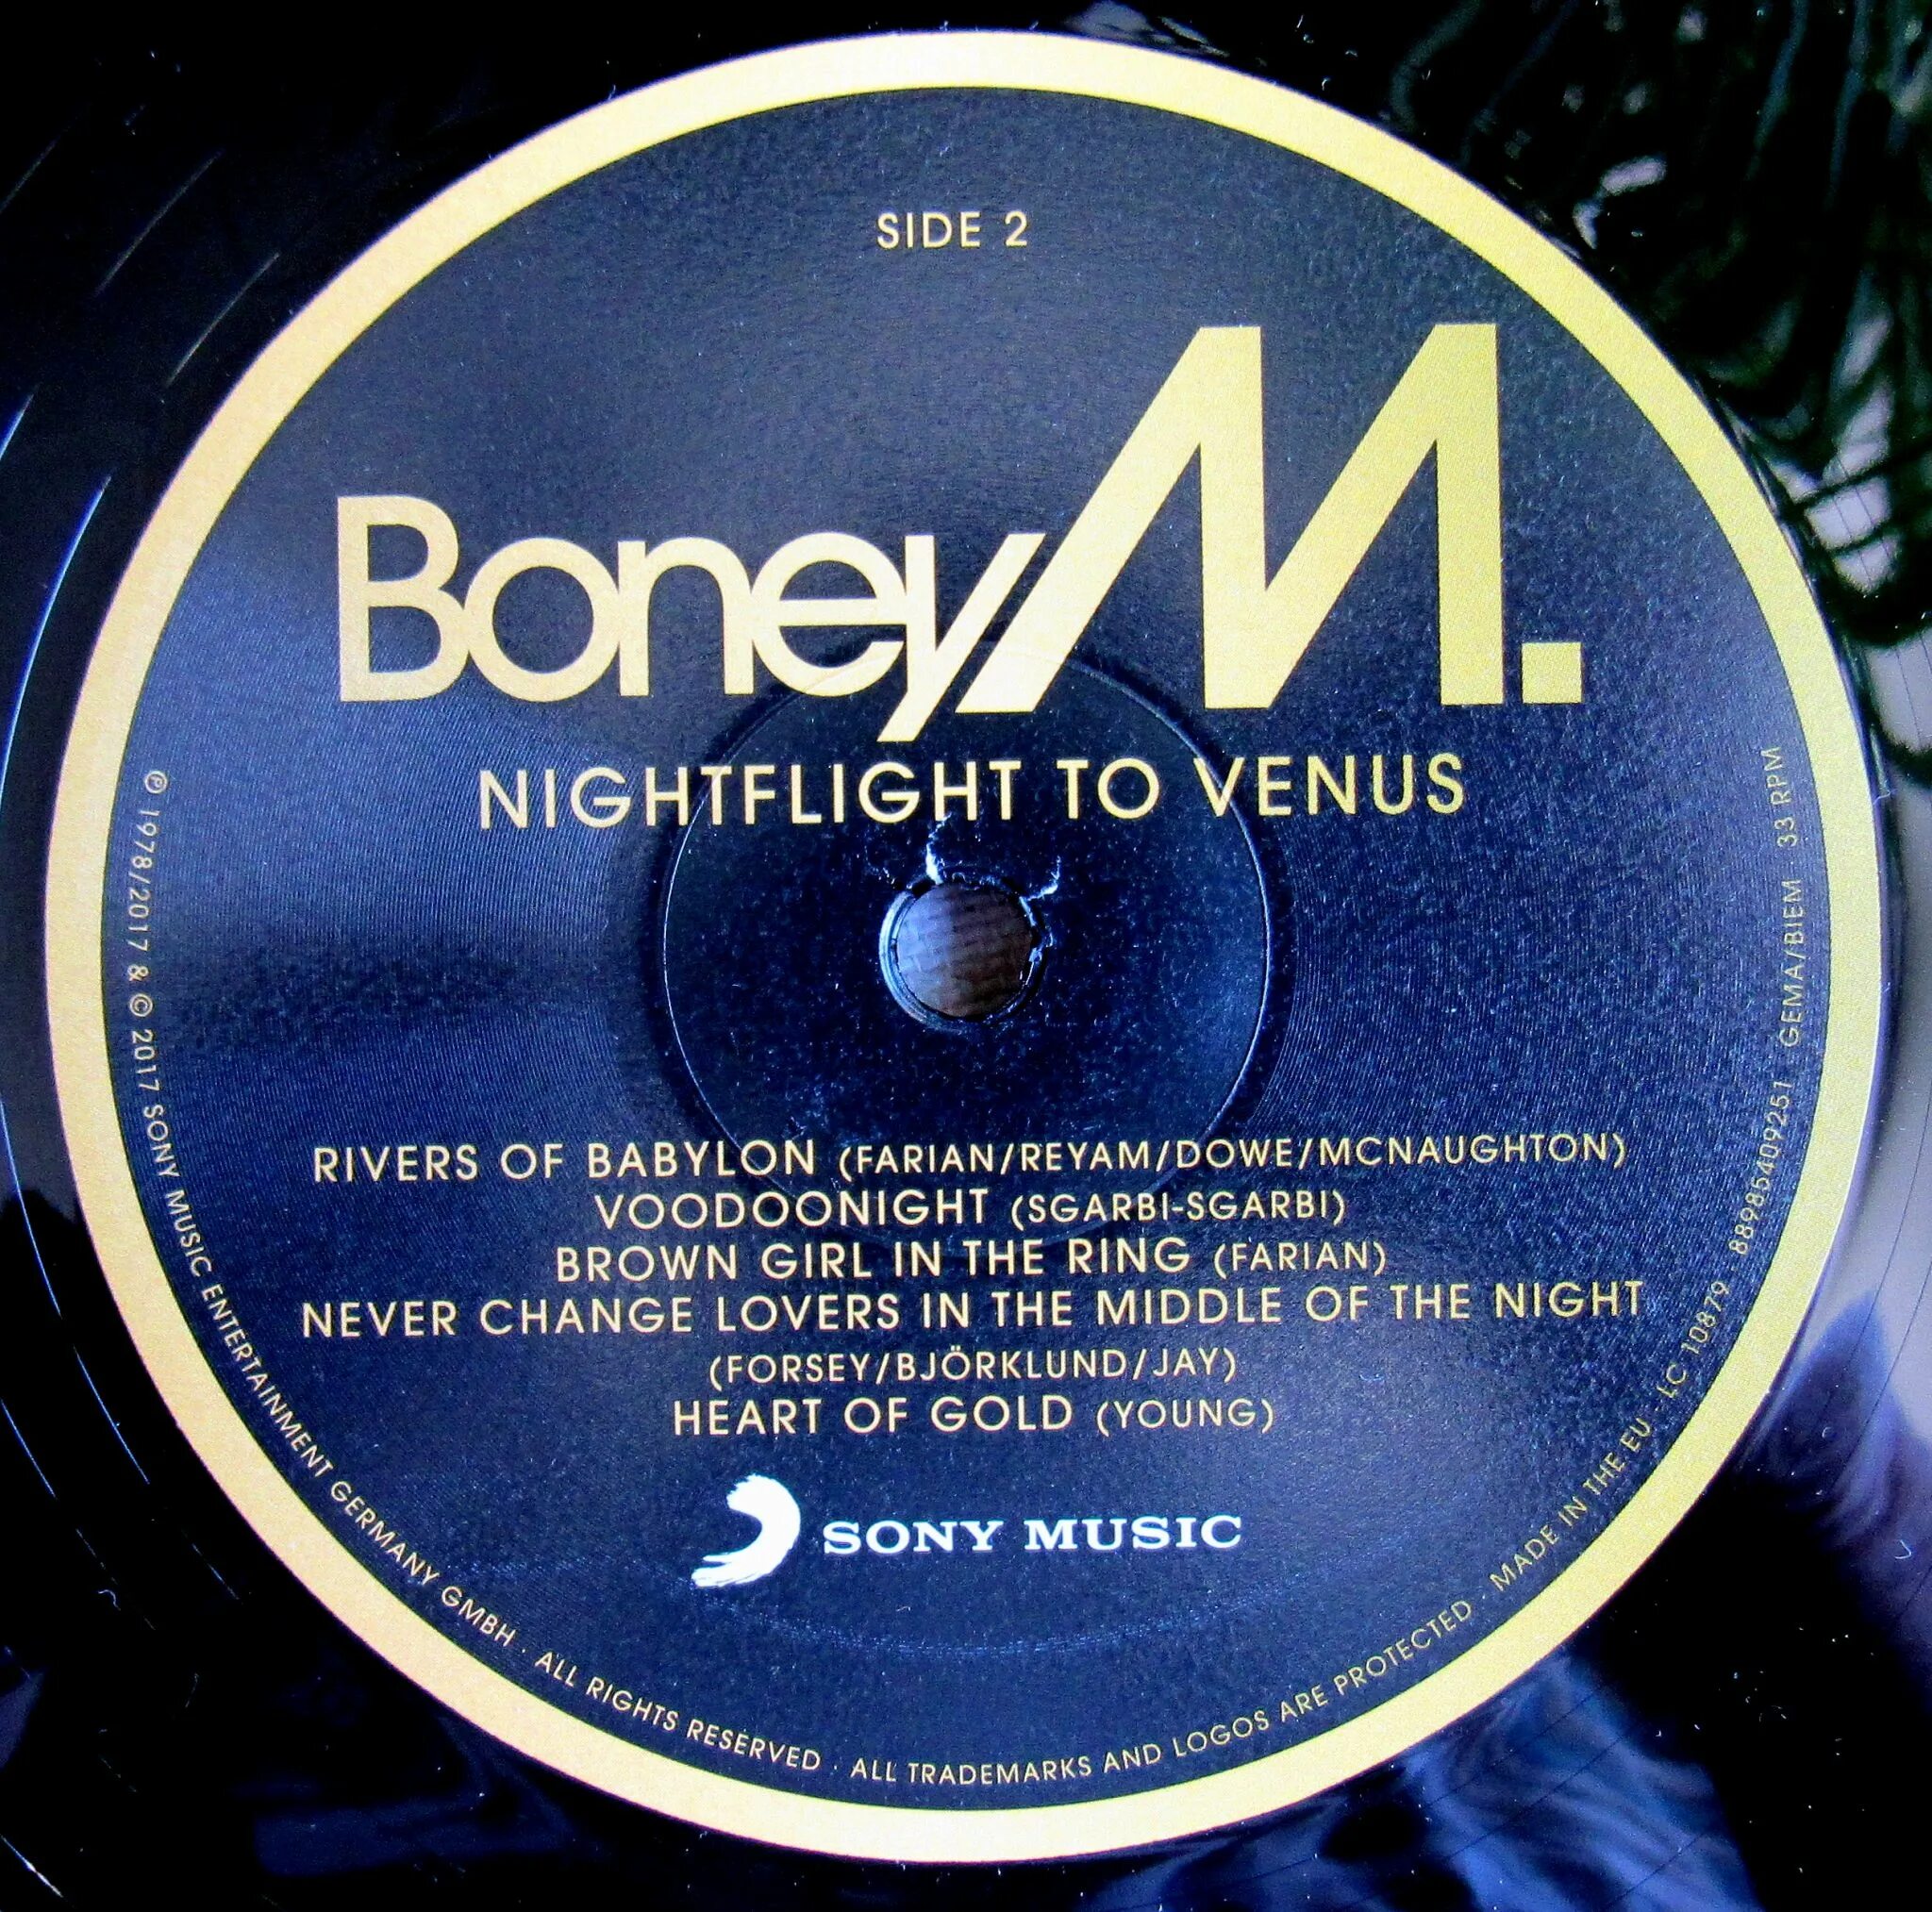 1978 - Nightflight to Venus. Пластинка Boney m Nightflight to Venus. Boney m Nightflight to Venus 1978. 0889854092511, Виниловая пластинка Boney m., Nightflight to Venus (0889854092511). Boney m nightflight